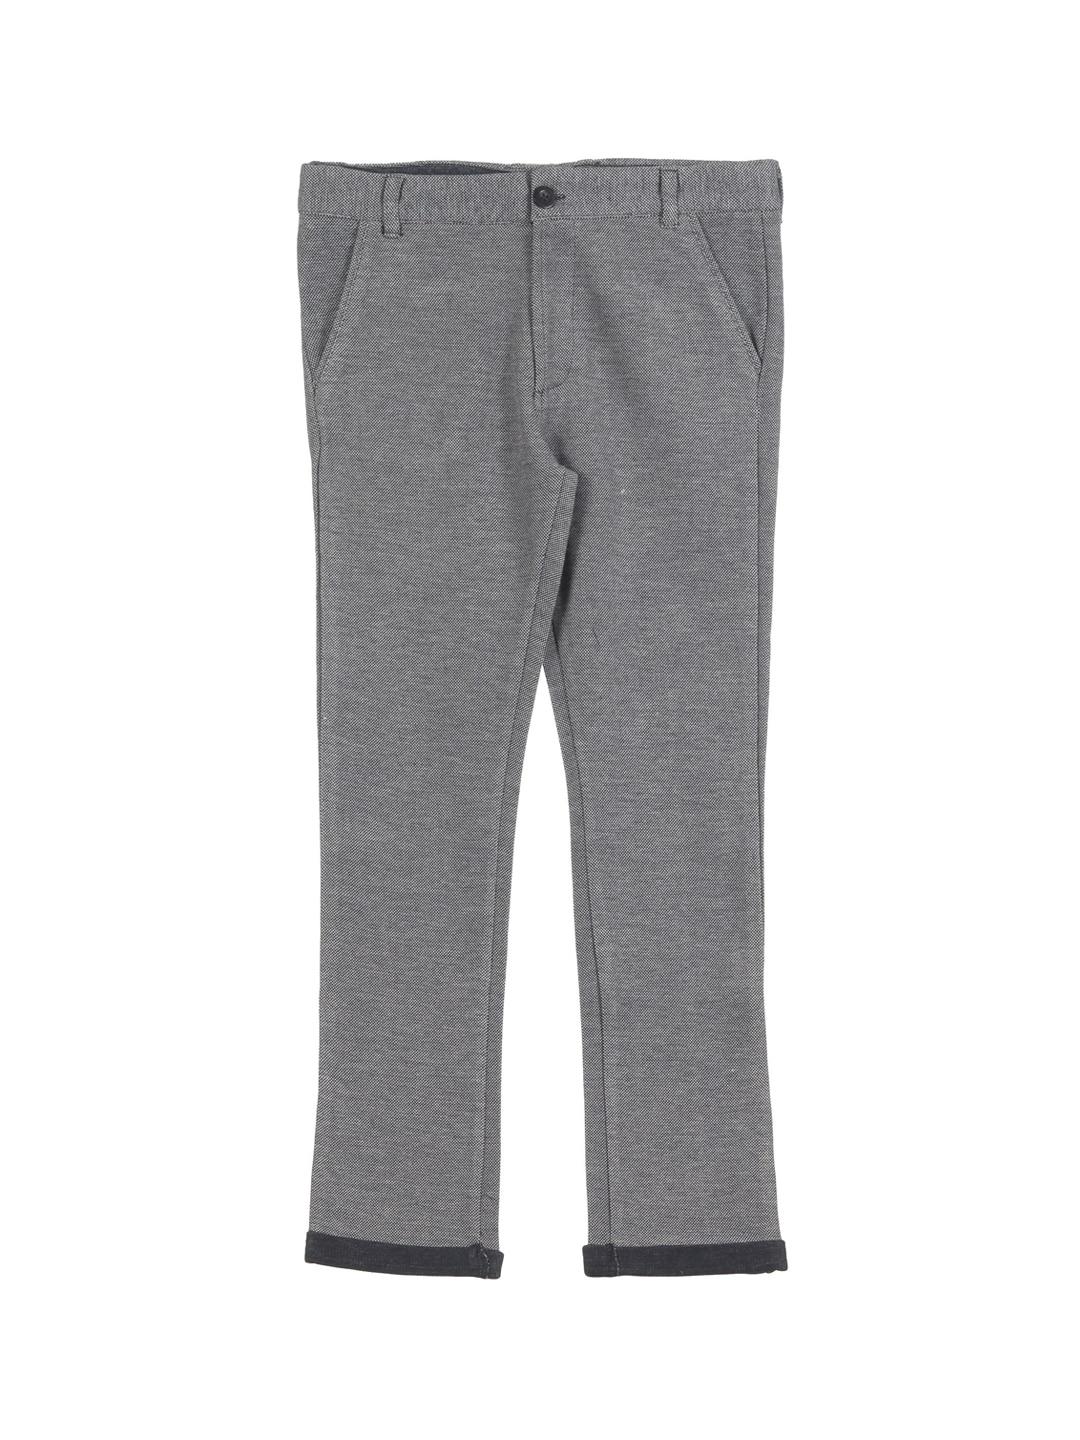 lil lollipop boys grey cotton slim fit trousers